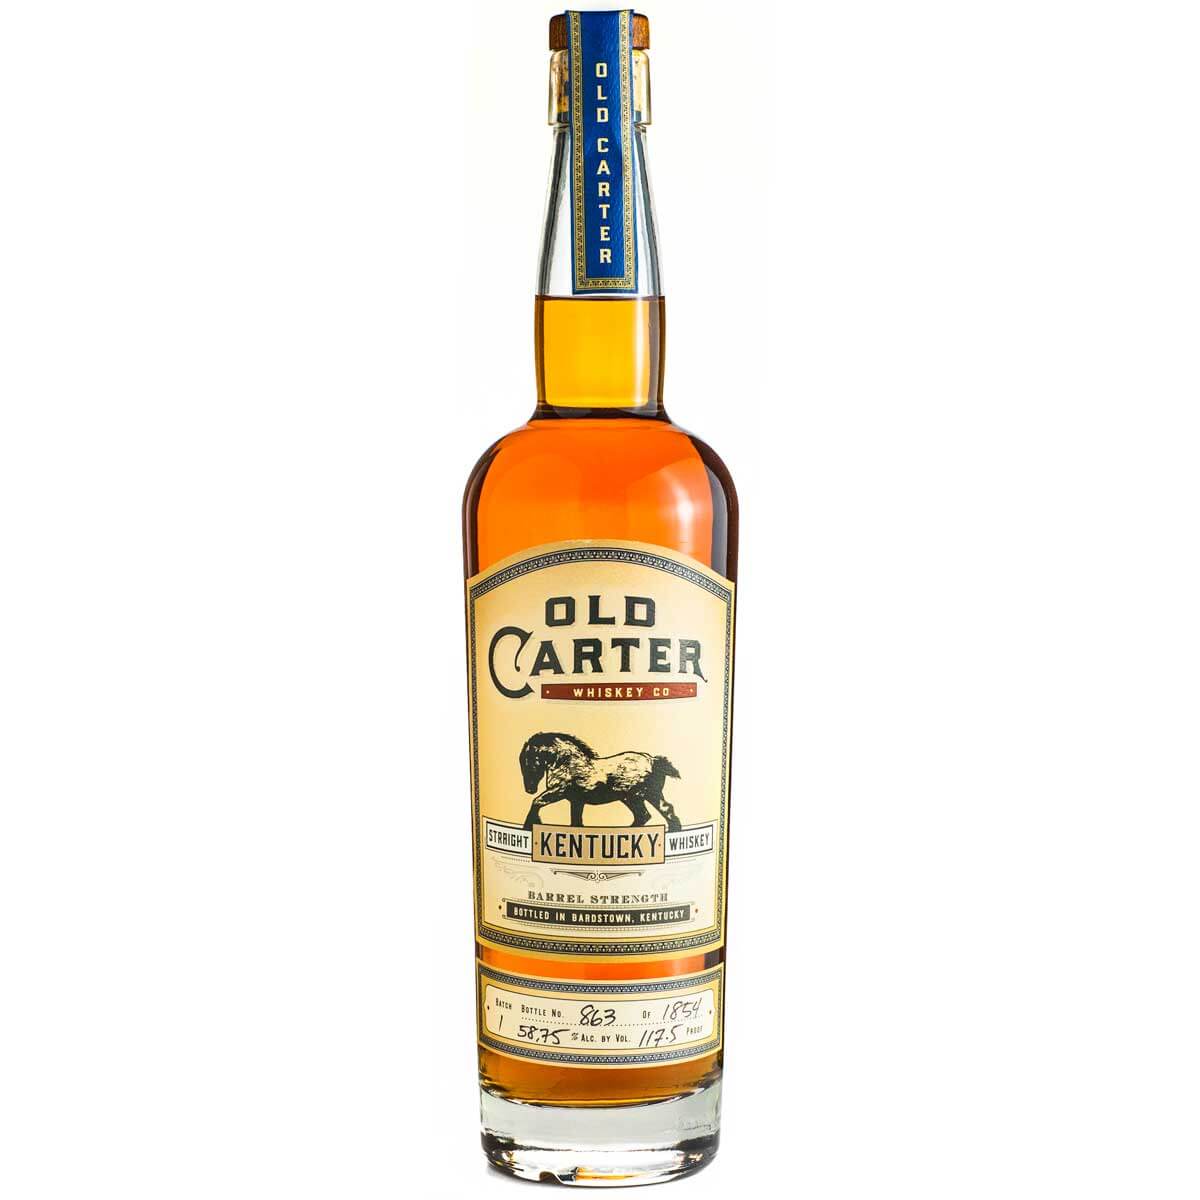 Old Carter Kentucky Whiskey bottle